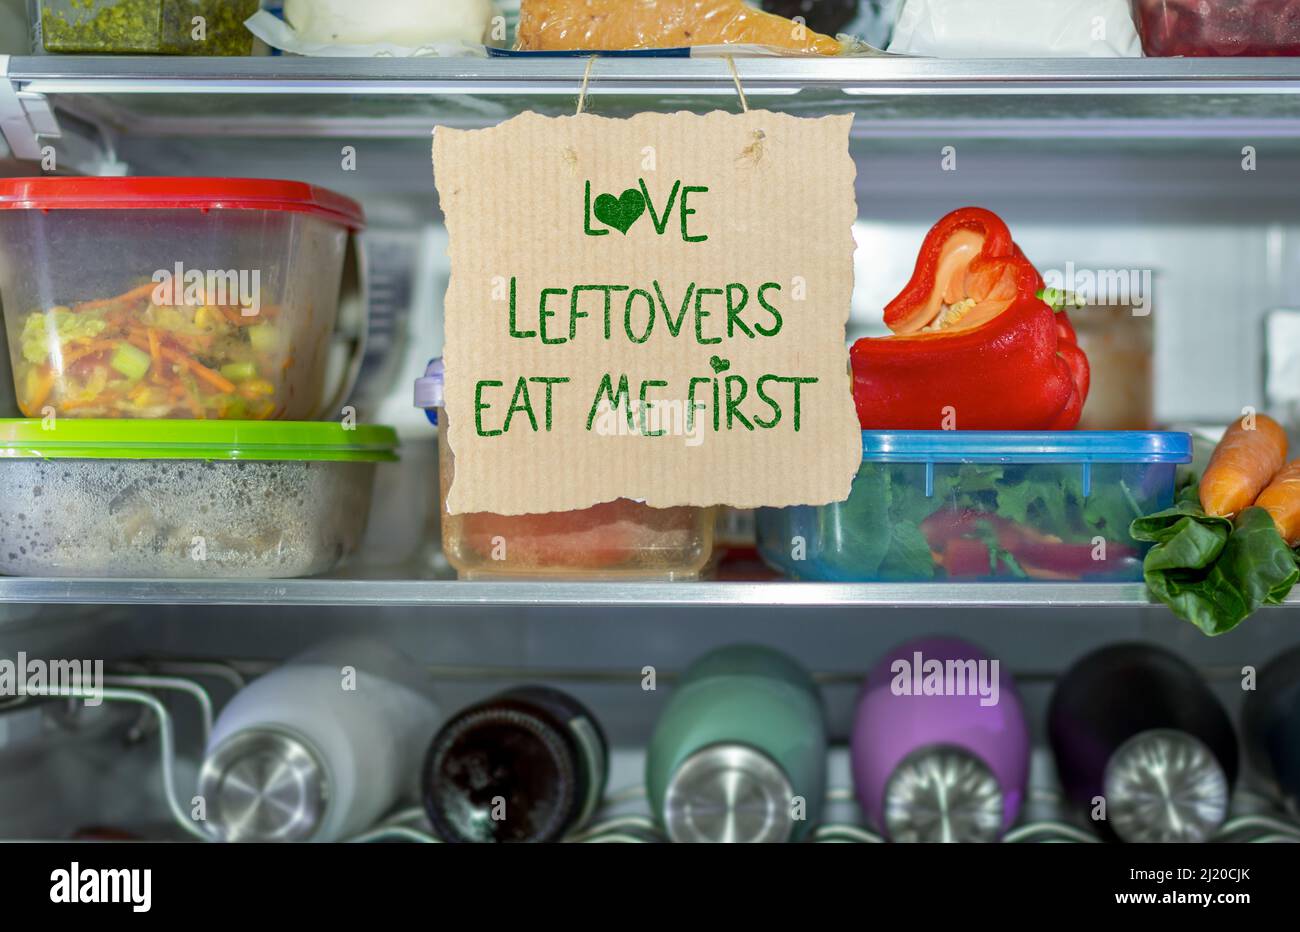 Love Leftovers mangiare me primo segno fatto a mano in frigorifero, contribuire a ridurre gli sprechi di cibo, sapere dove guardare prima, semplice ridurre il concetto di spreco di cibo. Foto Stock